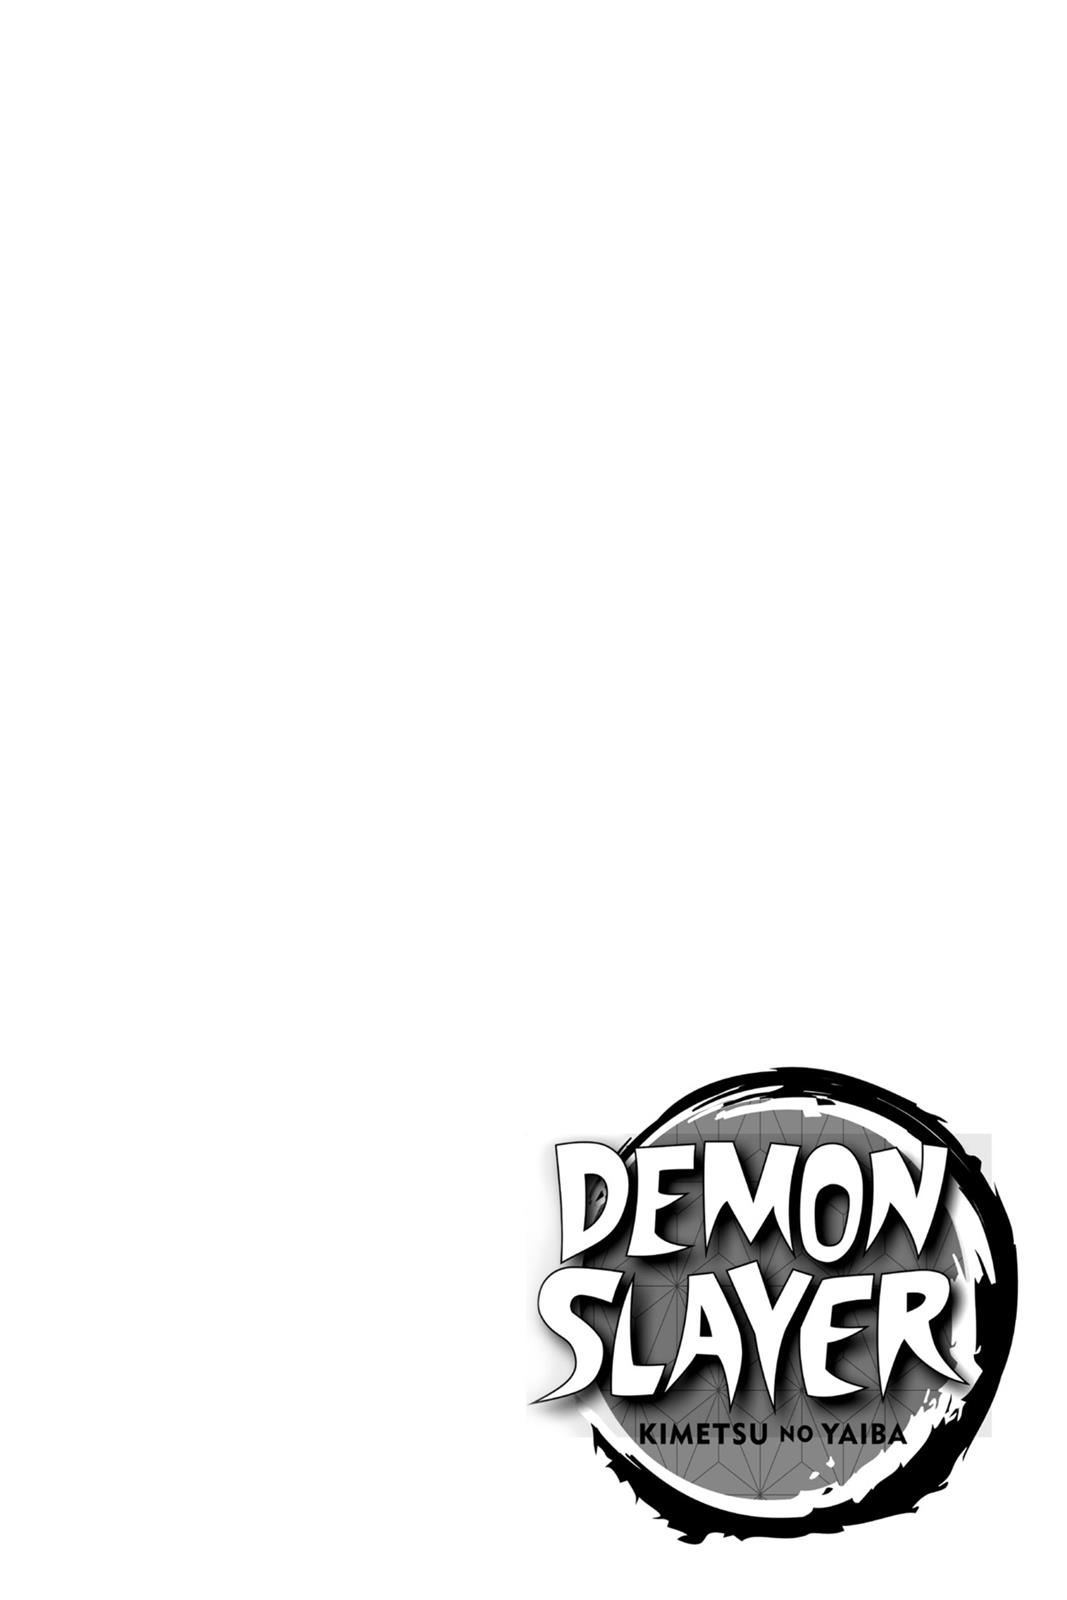 Demon Slayer Manga Manga Chapter - 61 - image 3